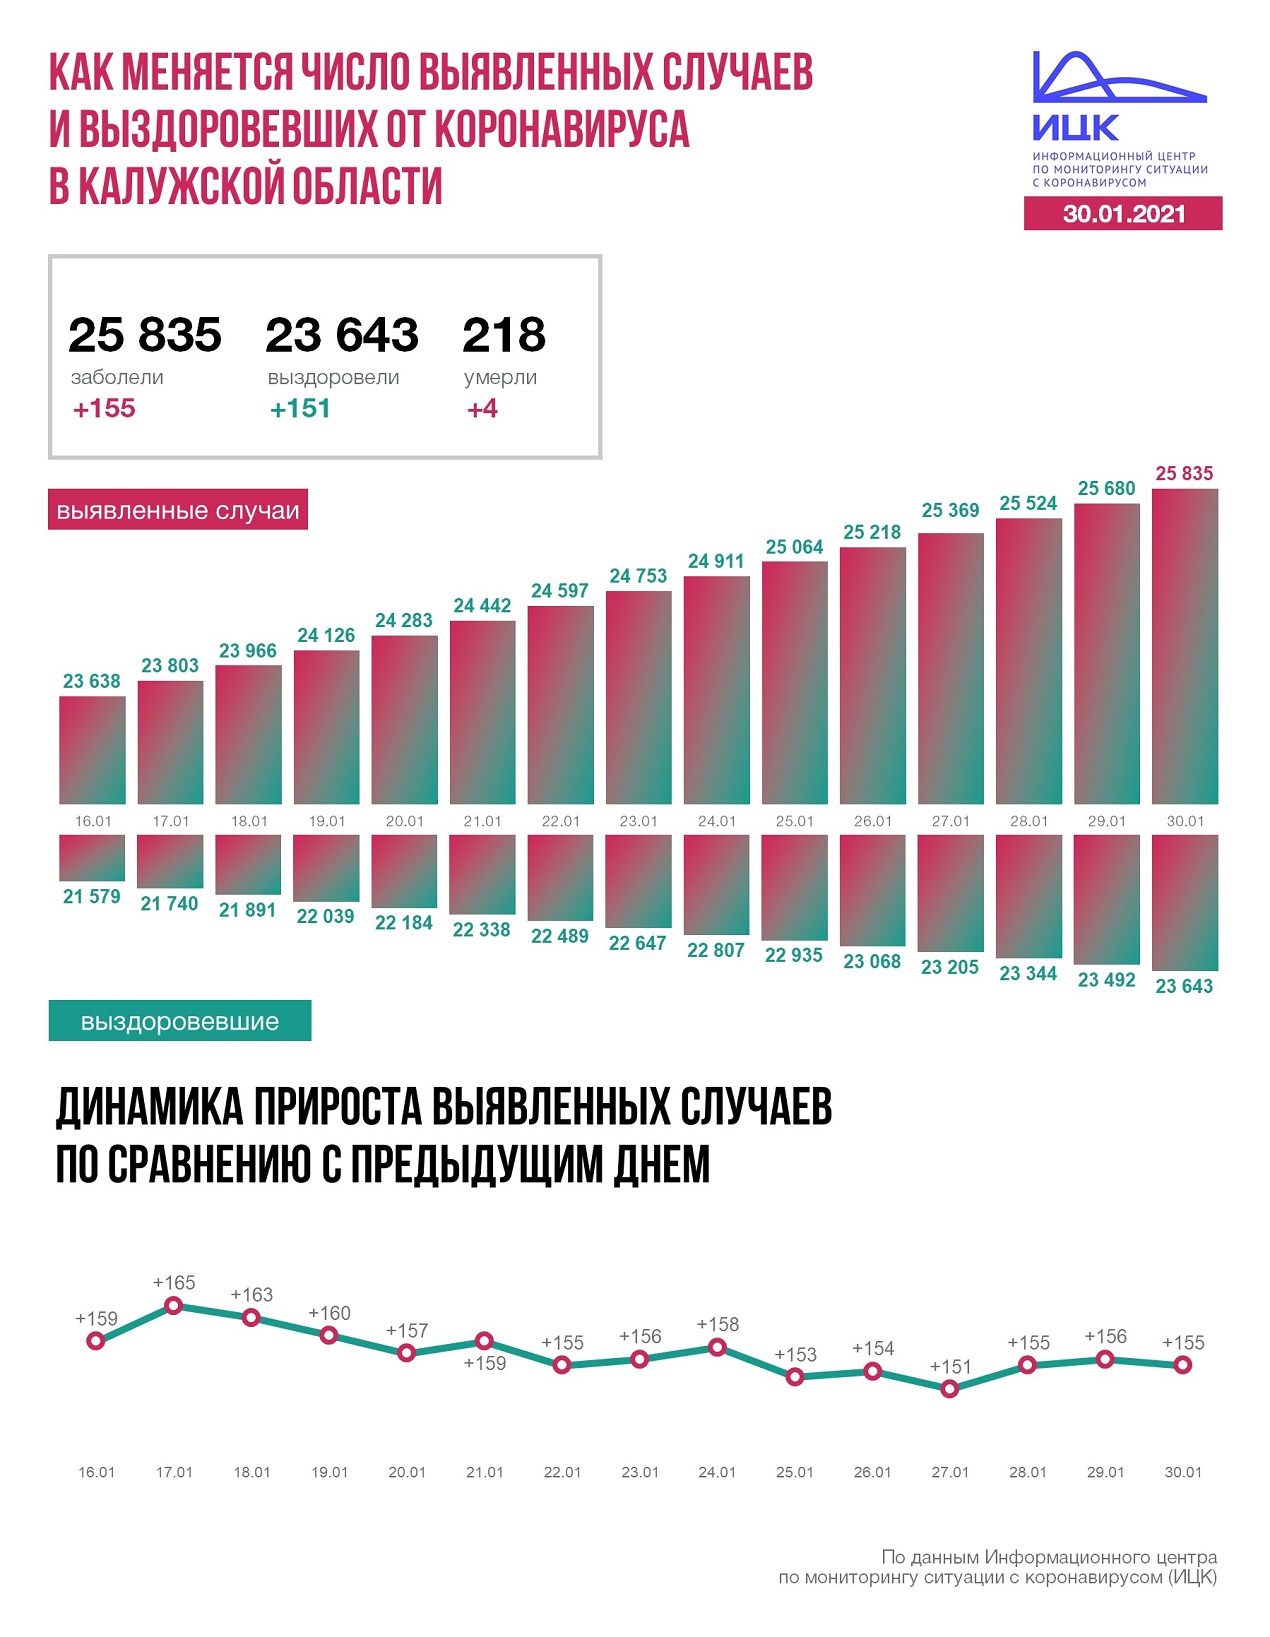 Официальные данные по коронавирусу в Калужской области на 30 января 2021 года.